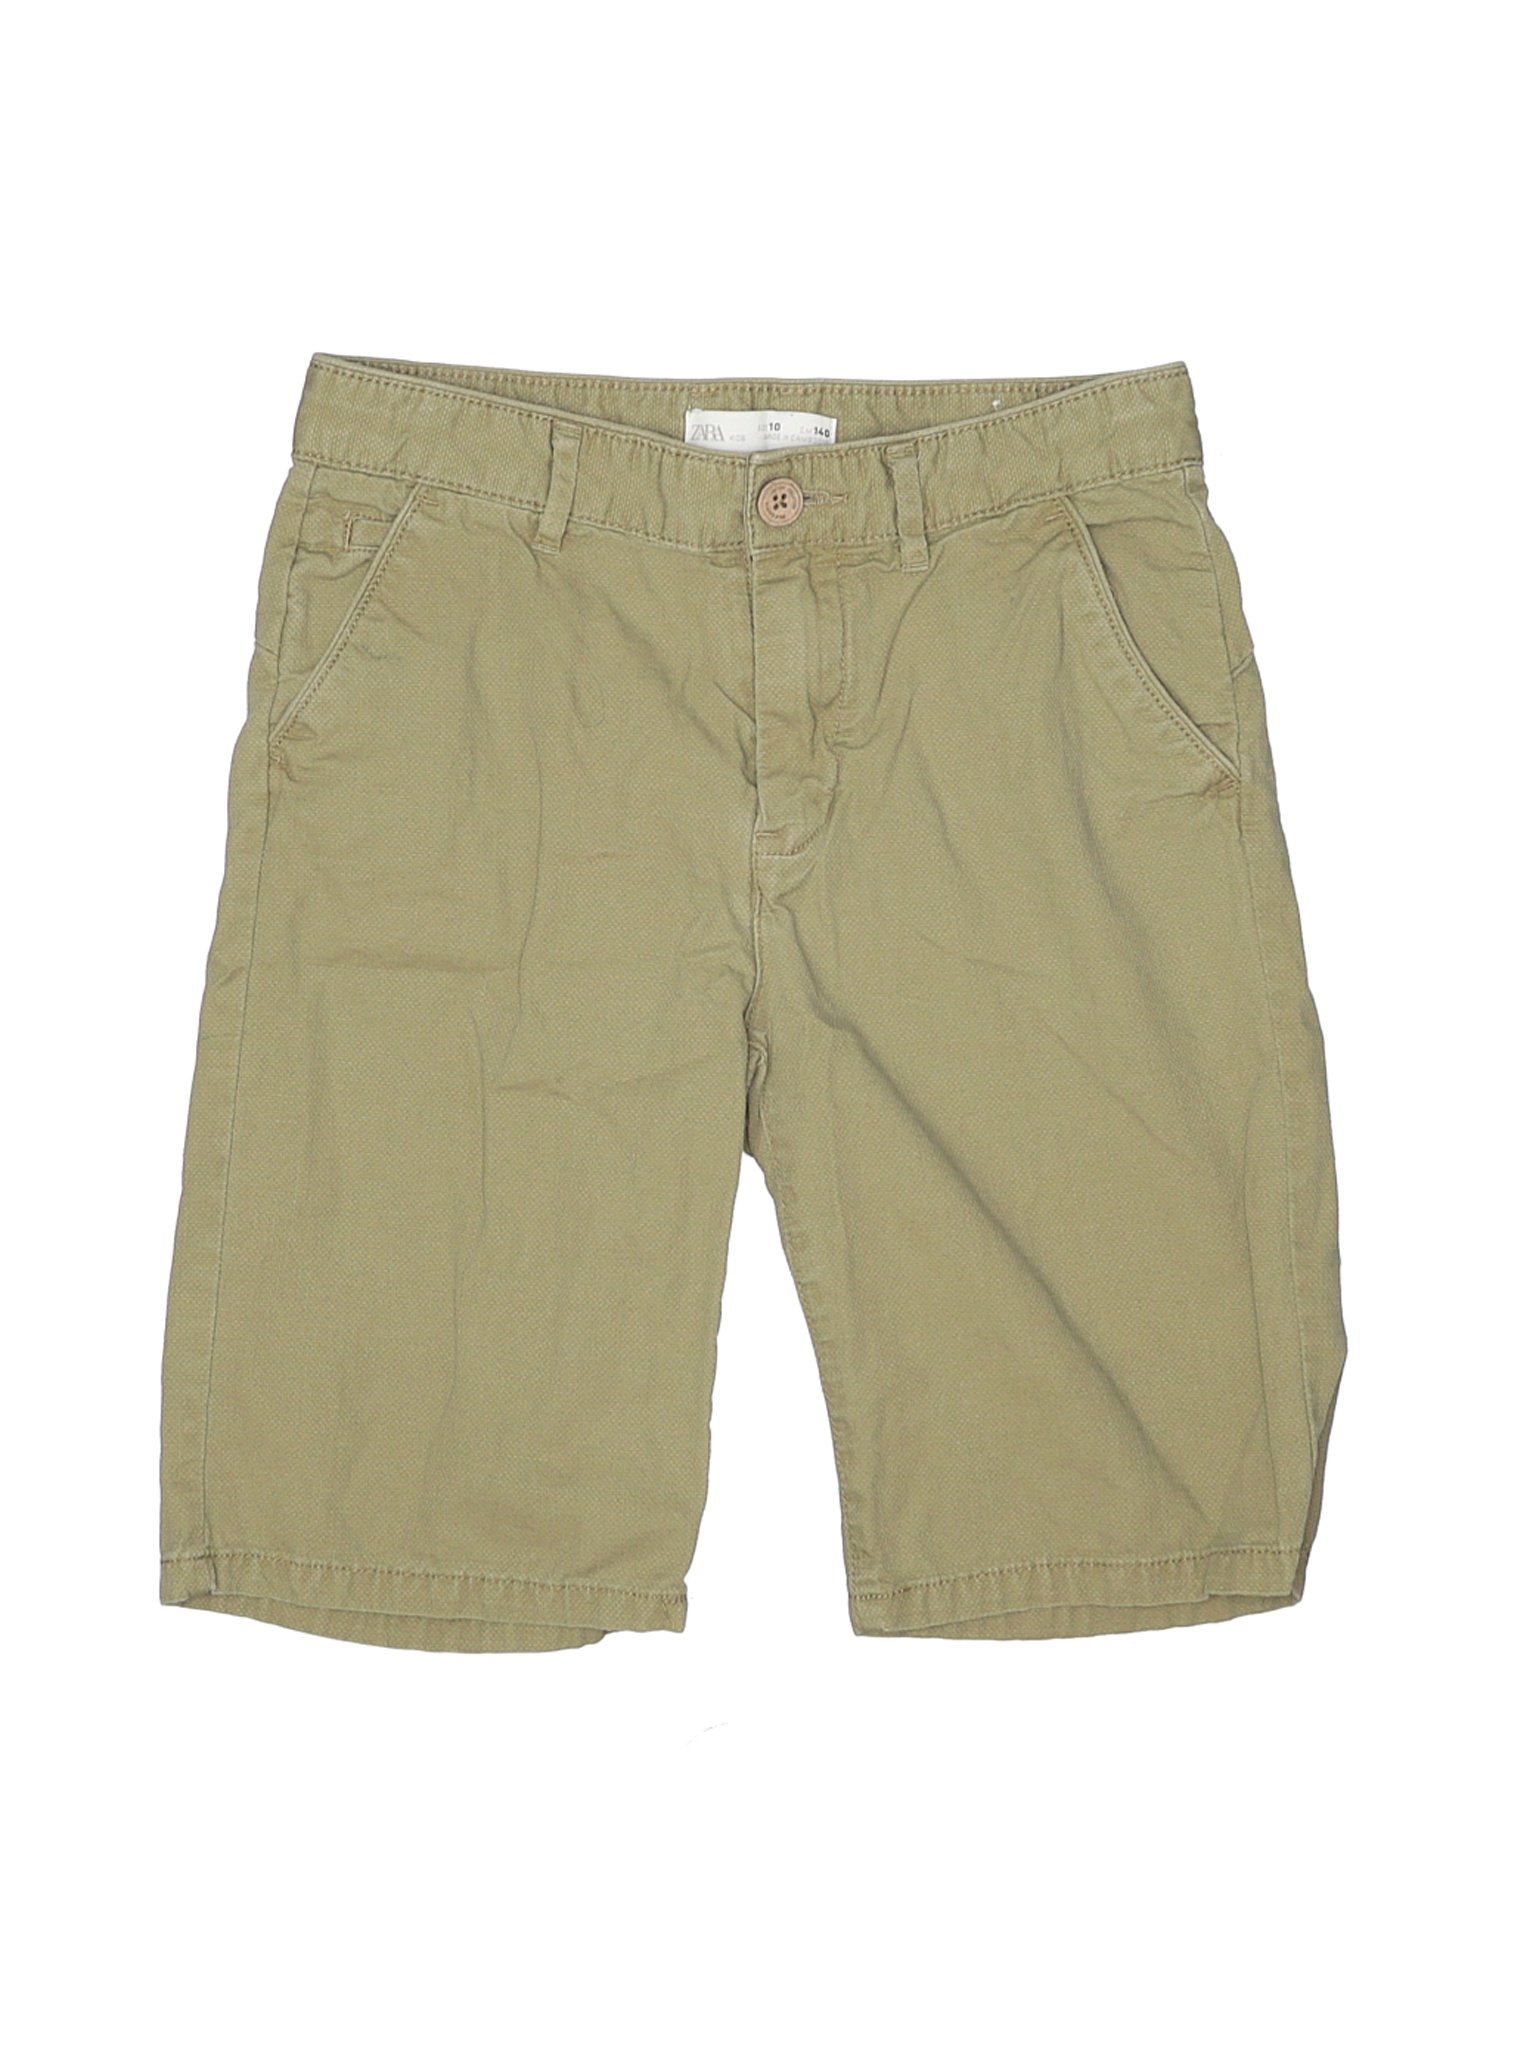 Zara Kids Boys Green Shorts 10 | eBay